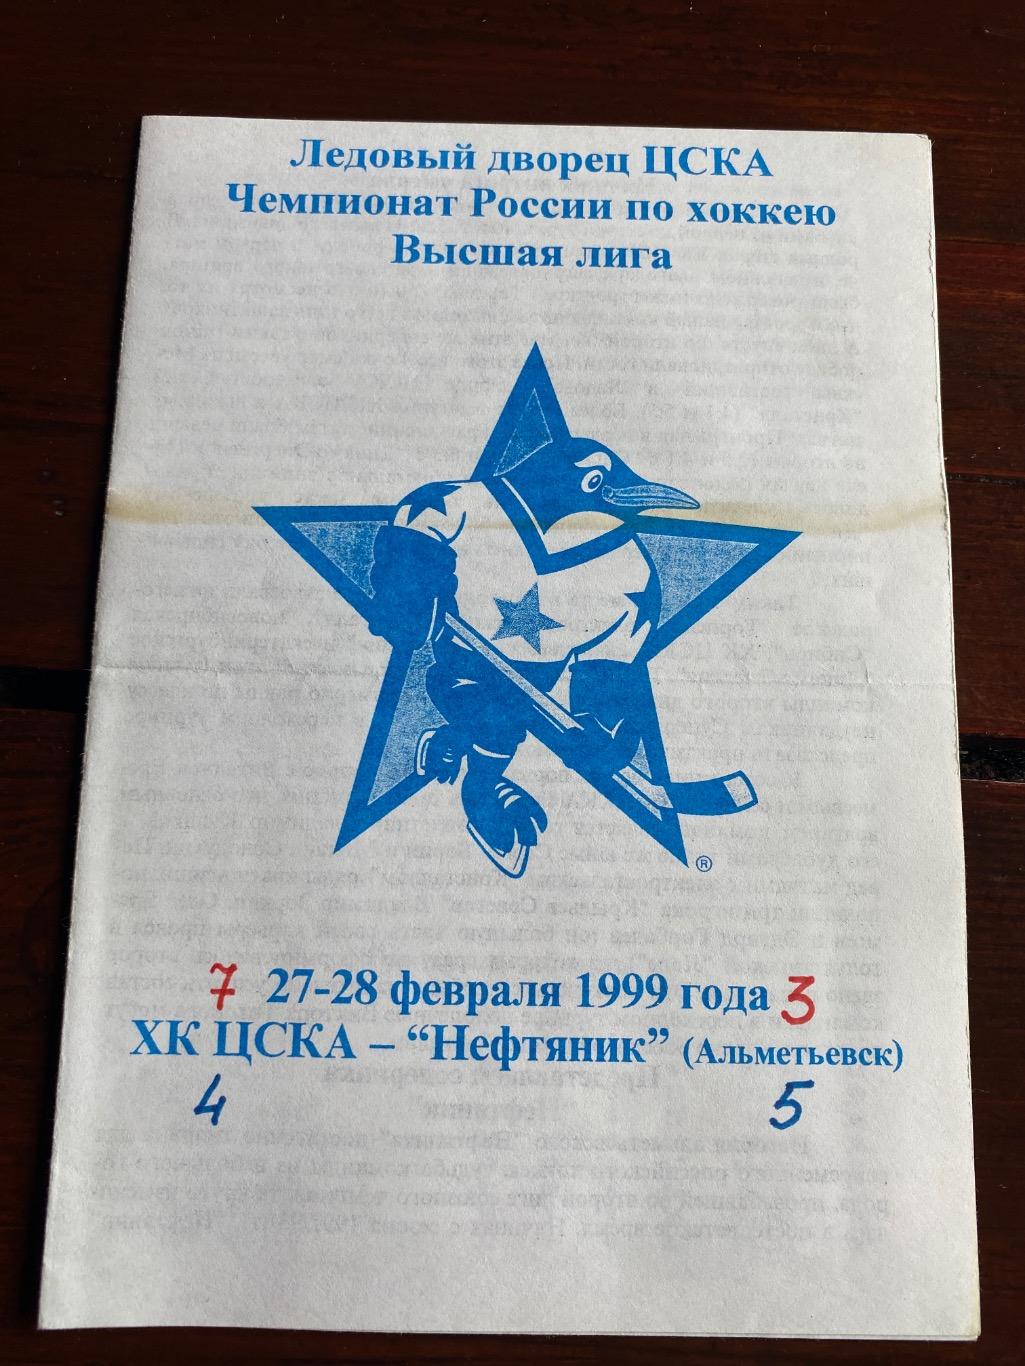 Программа ХК ЦСКА - Нефтяник 1999